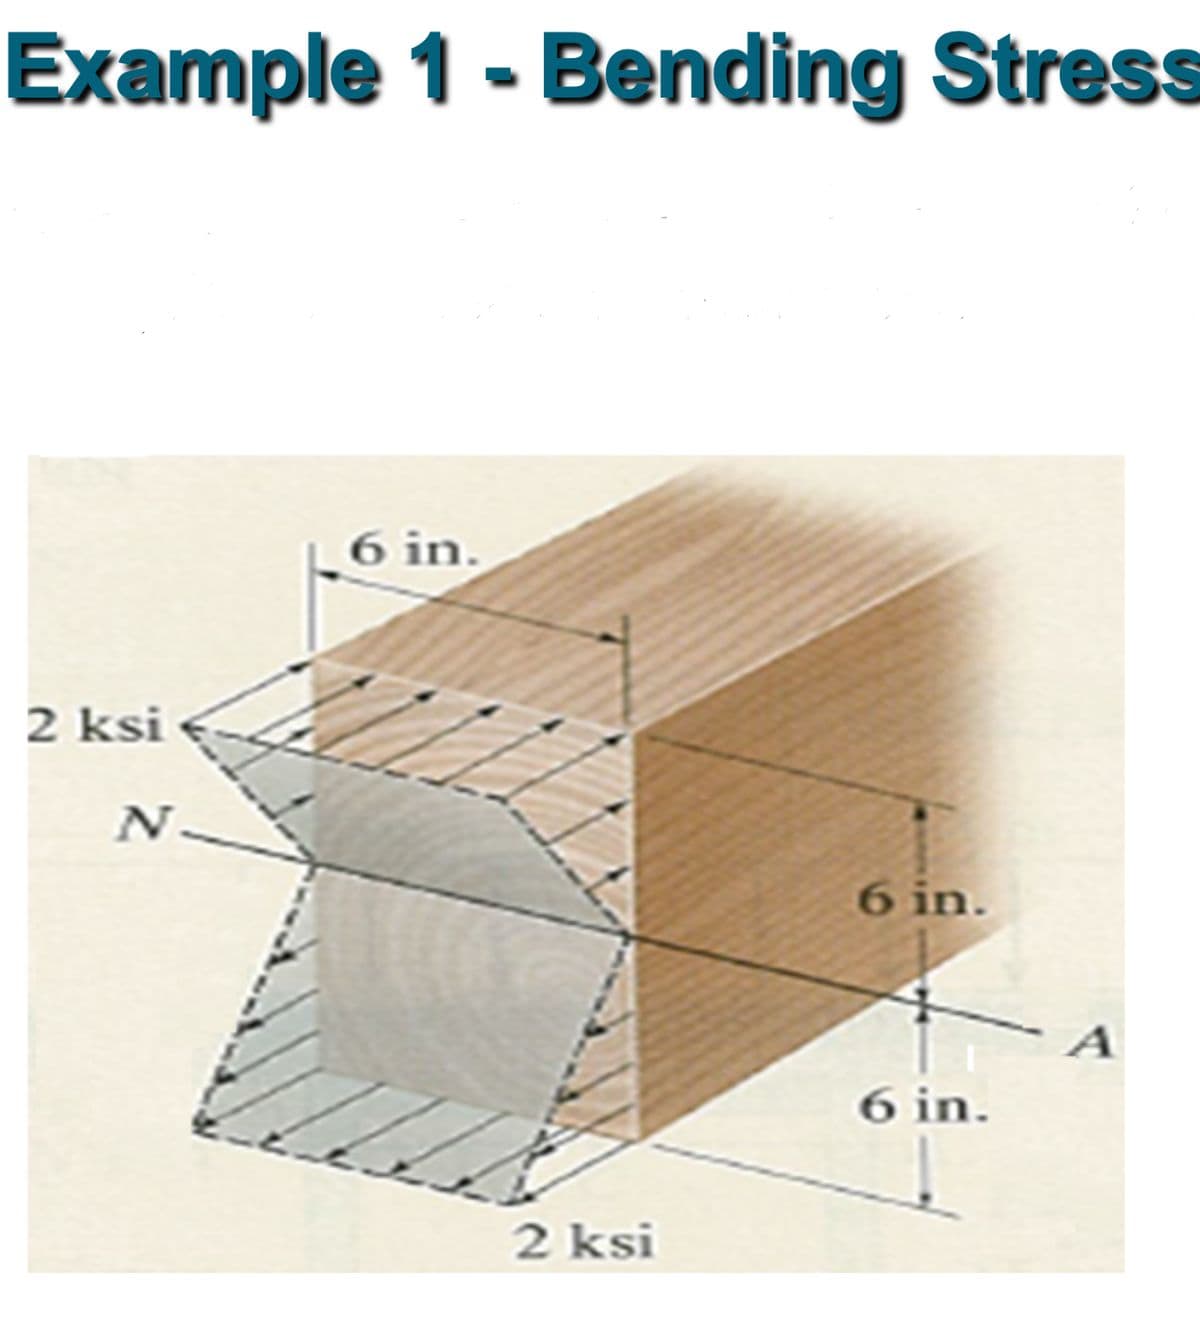 Example 1 - Bending Stress
2 ksi
N
6 in.
2 ksi
6 in.
6 in.
A